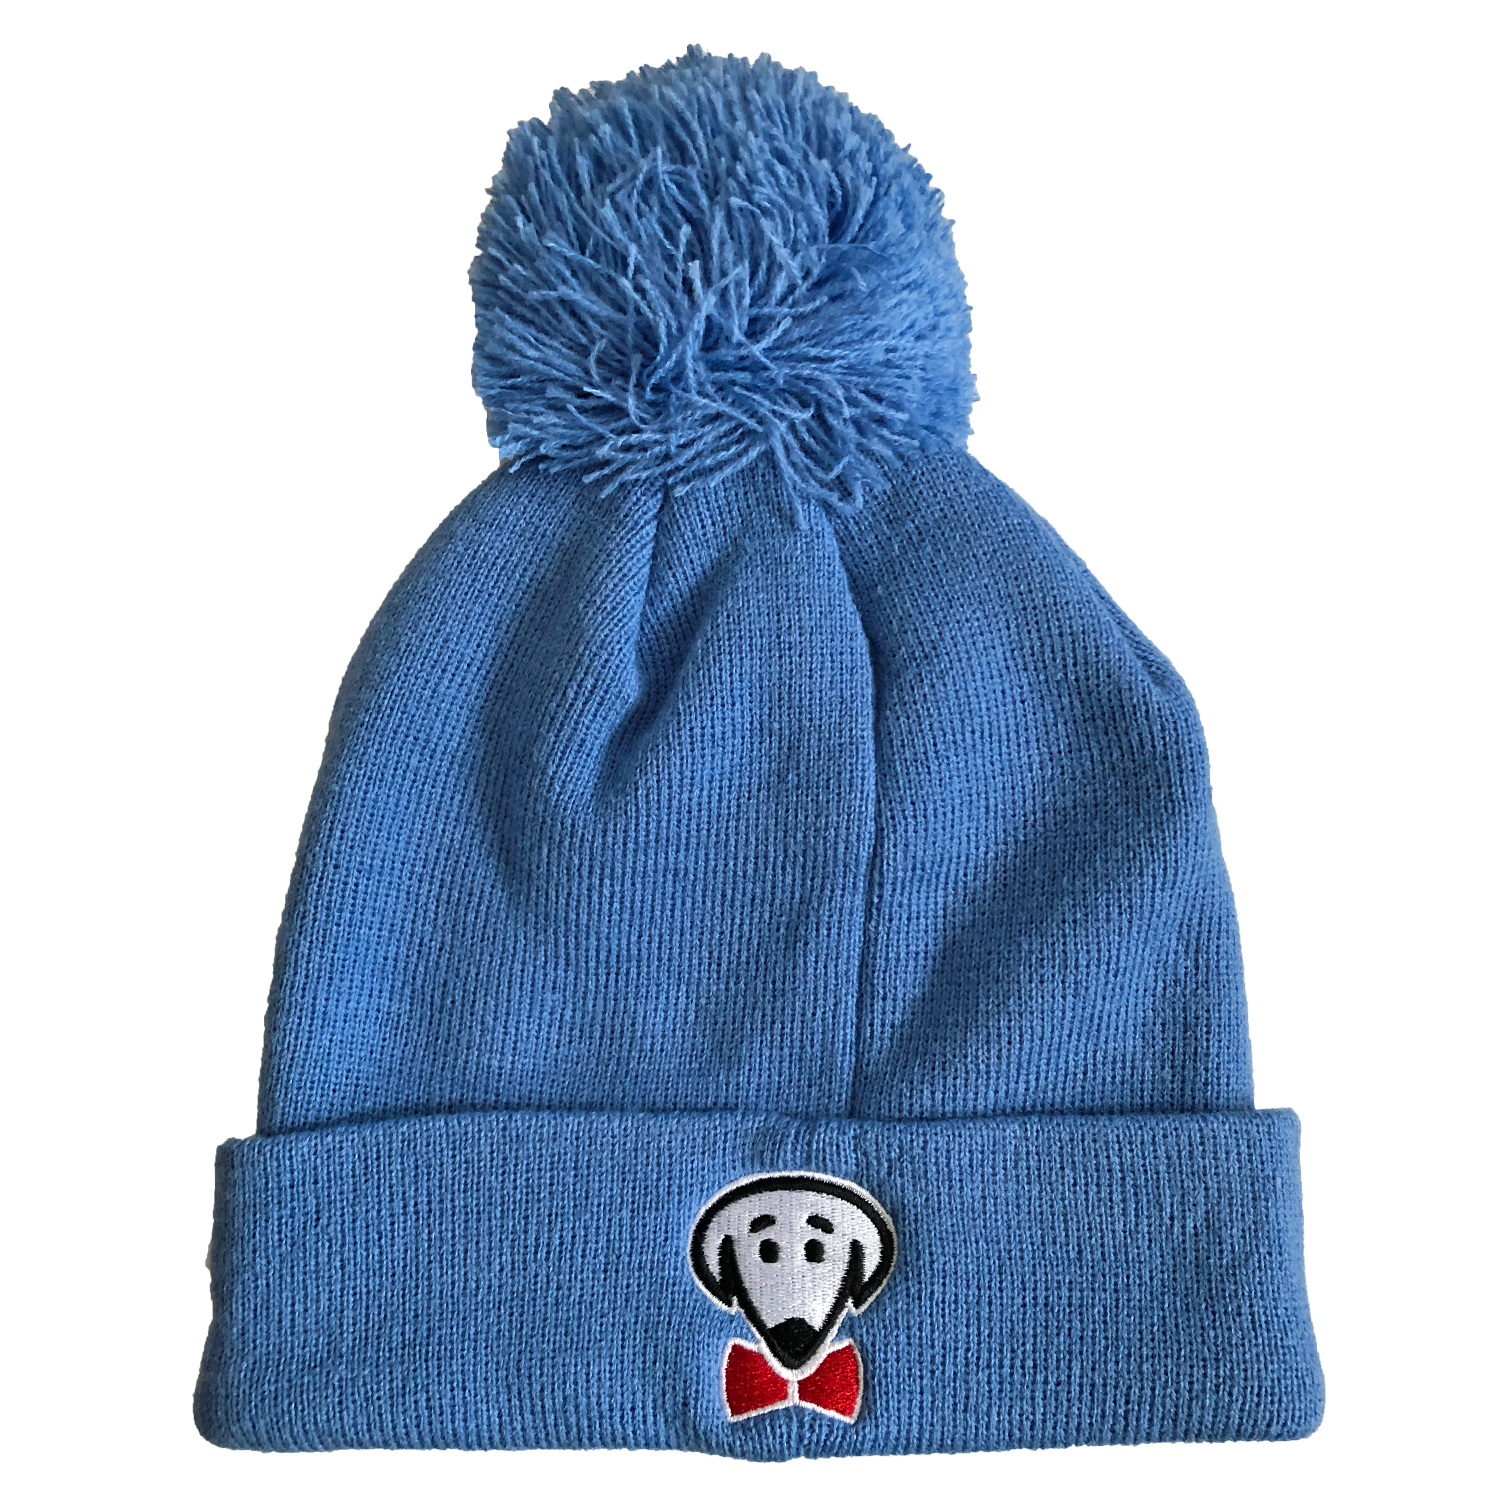 Beau Tyler - RockStar winter knit hat baby blue back - maybe temp